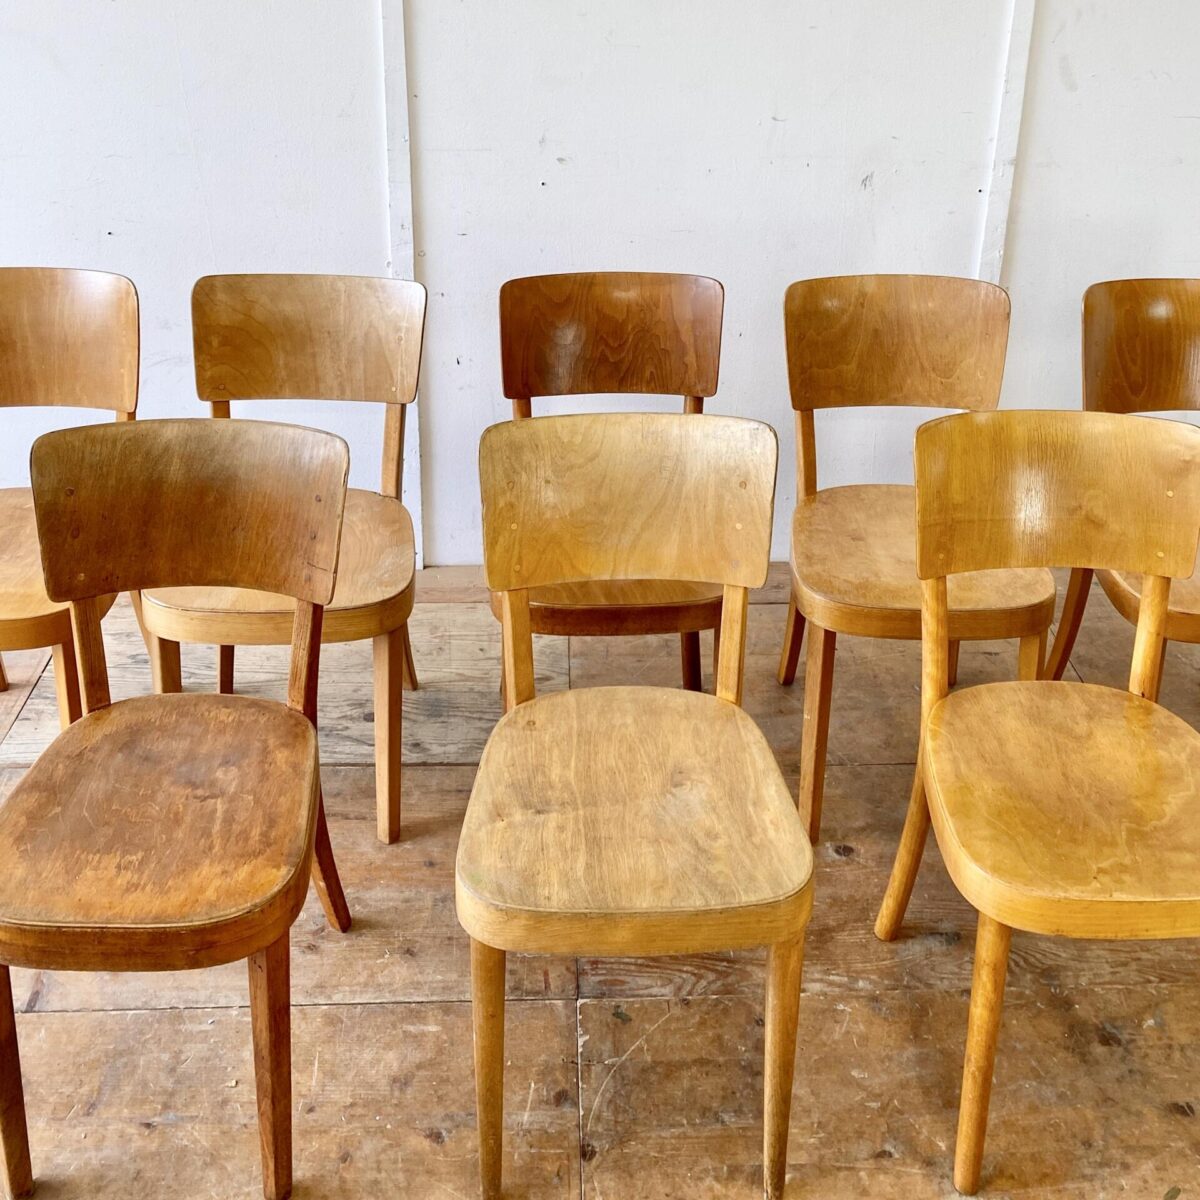 Deuxieme.shop Beizenstühle Horgenglarus Swiss design 30er Jahre. Verschiedene horgenglarus Stühle Modell Safran. Preis pro Stuhl. Die Stühle sind leicht überarbeitet, wacklige Vorderbeine und Sitzflächen frisch verleimt. Drei verschiedene Modelle und unterschiedlich im Farbton. 